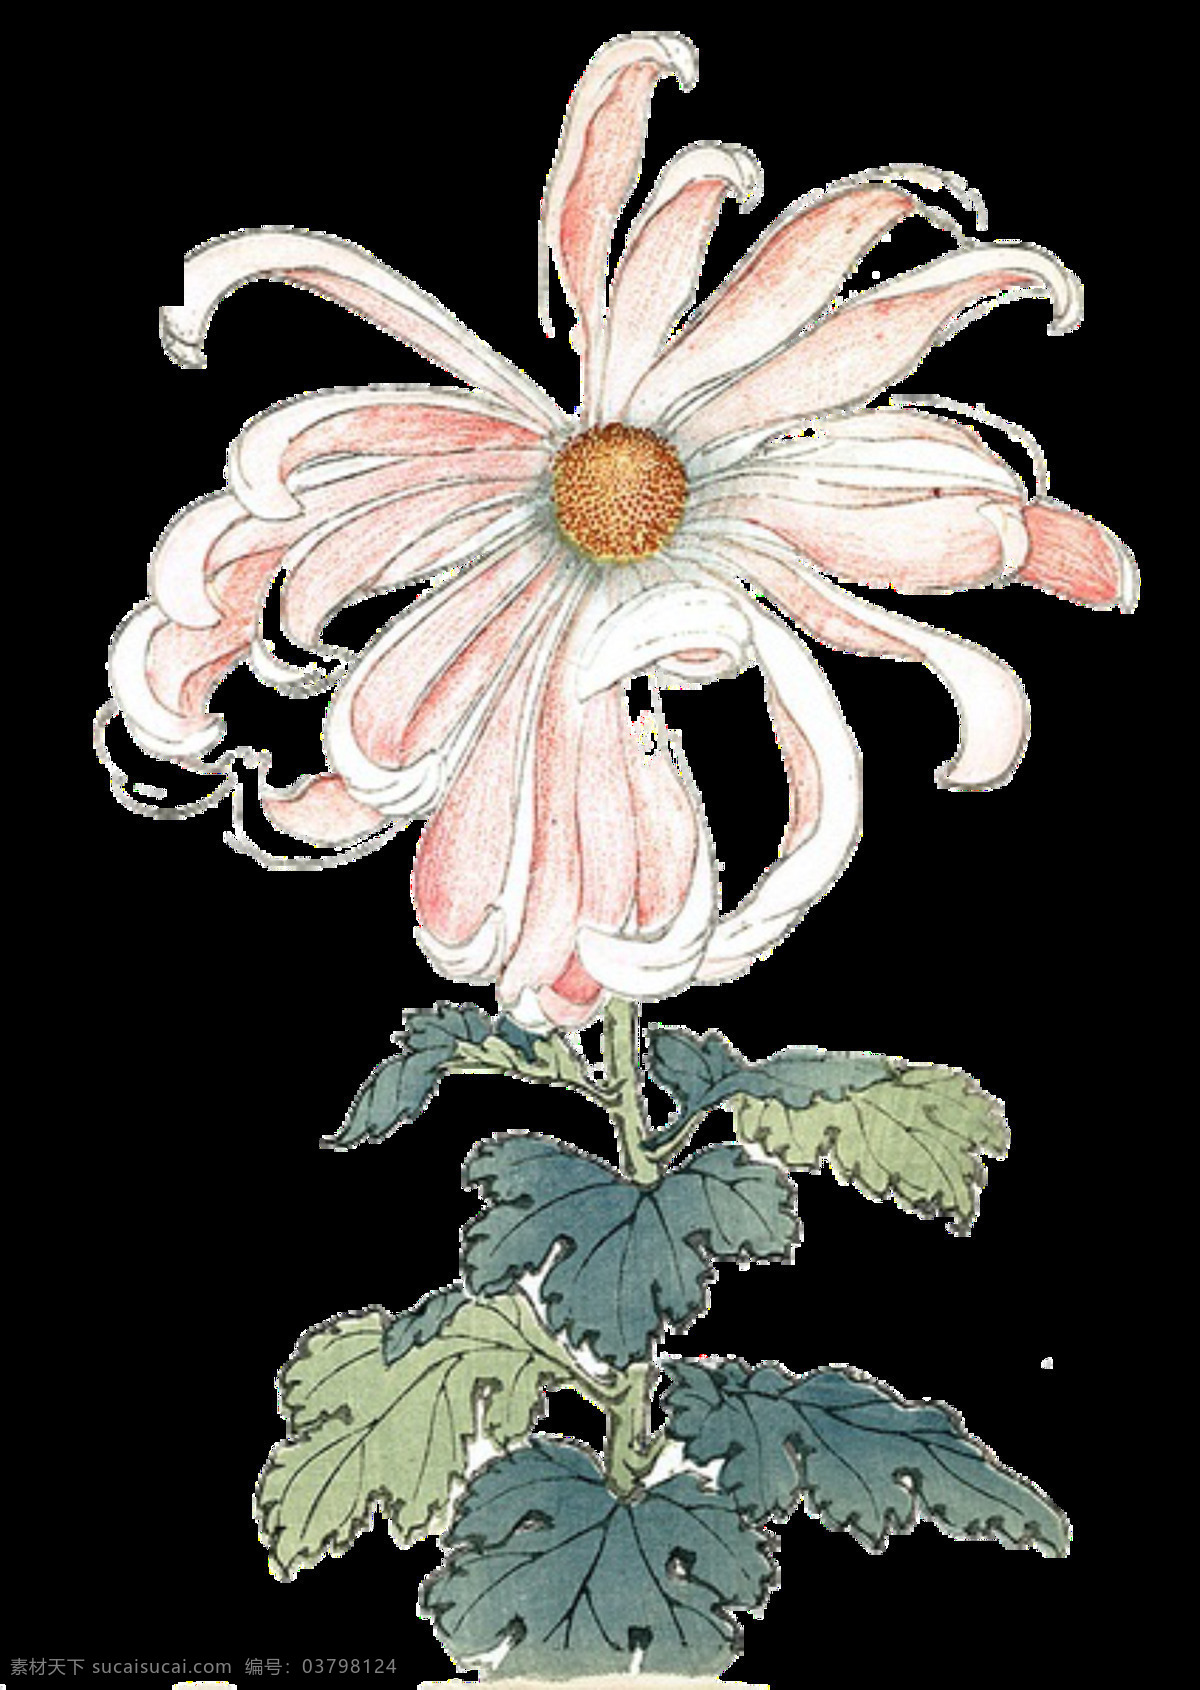 文艺 风格 手绘 菊花 装饰 元素 粉色花朵 黄色花蕊 叶子 植物 装饰元素